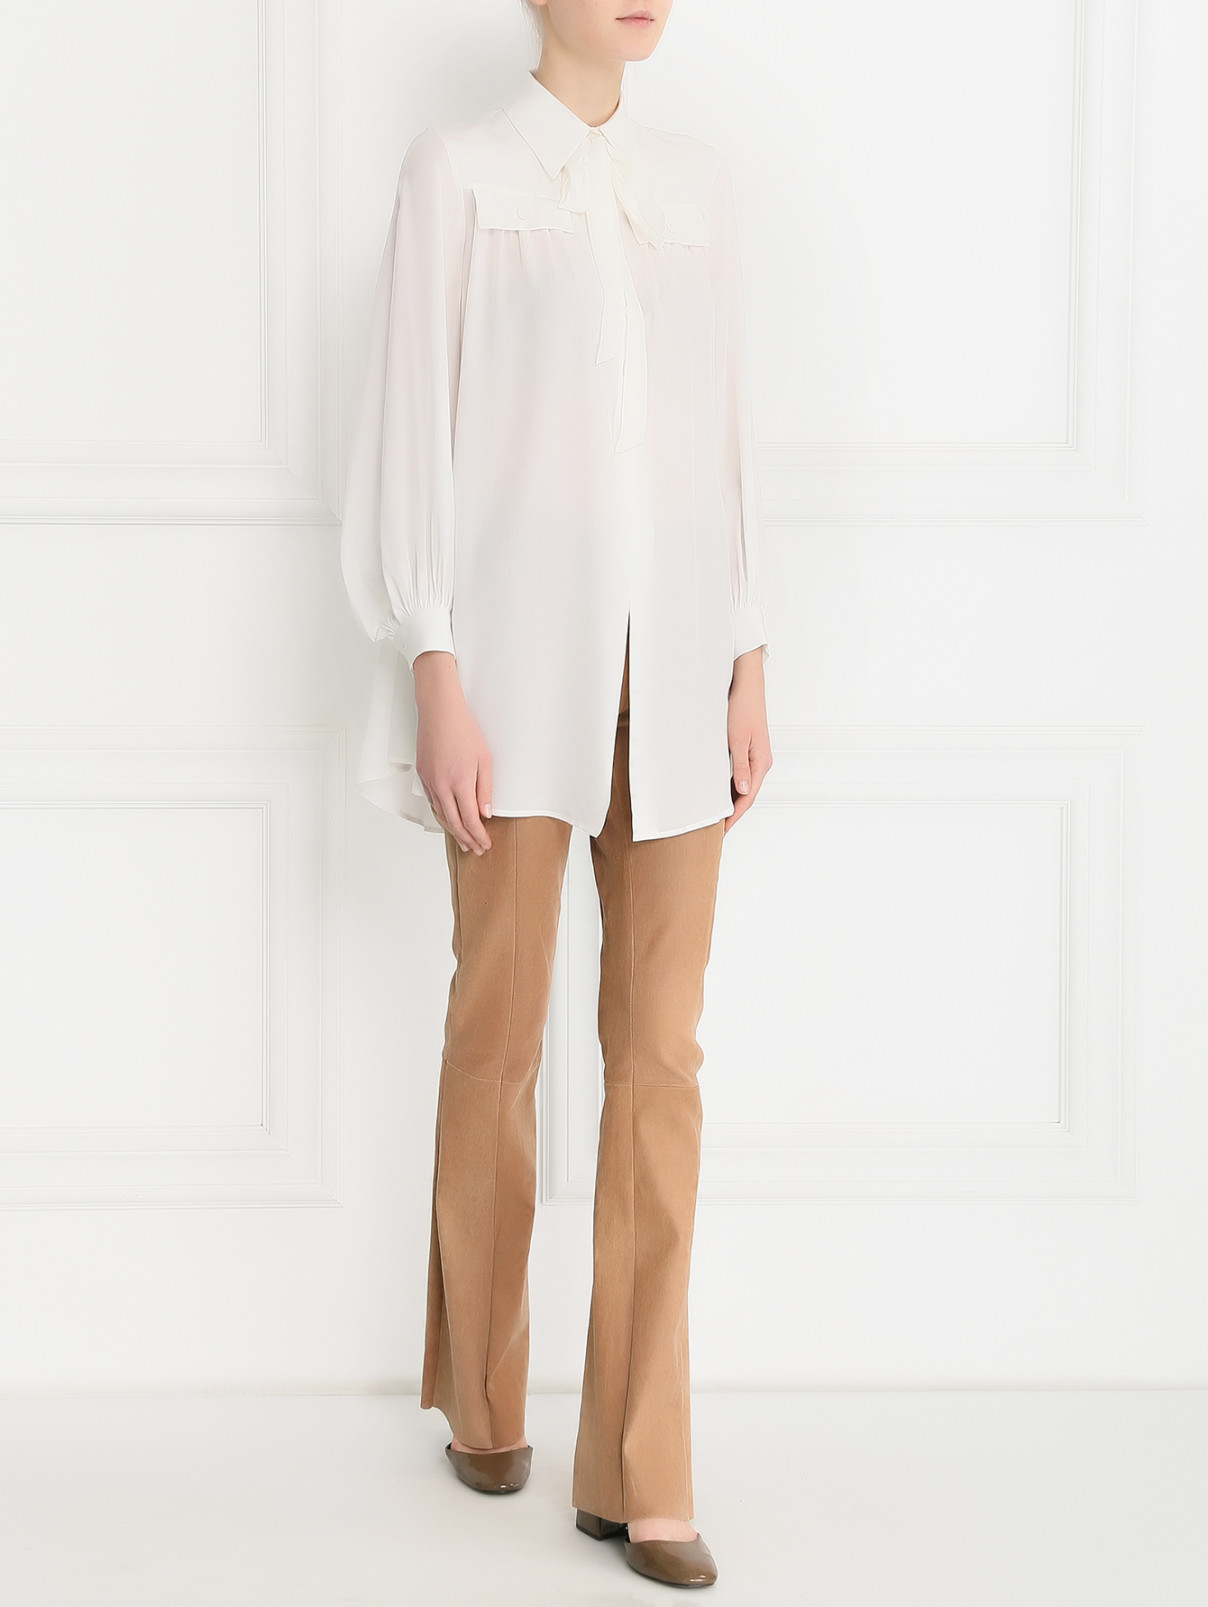 Блуза из шелка свободного кроя Rossella Jardini  –  Модель Общий вид  – Цвет:  Белый